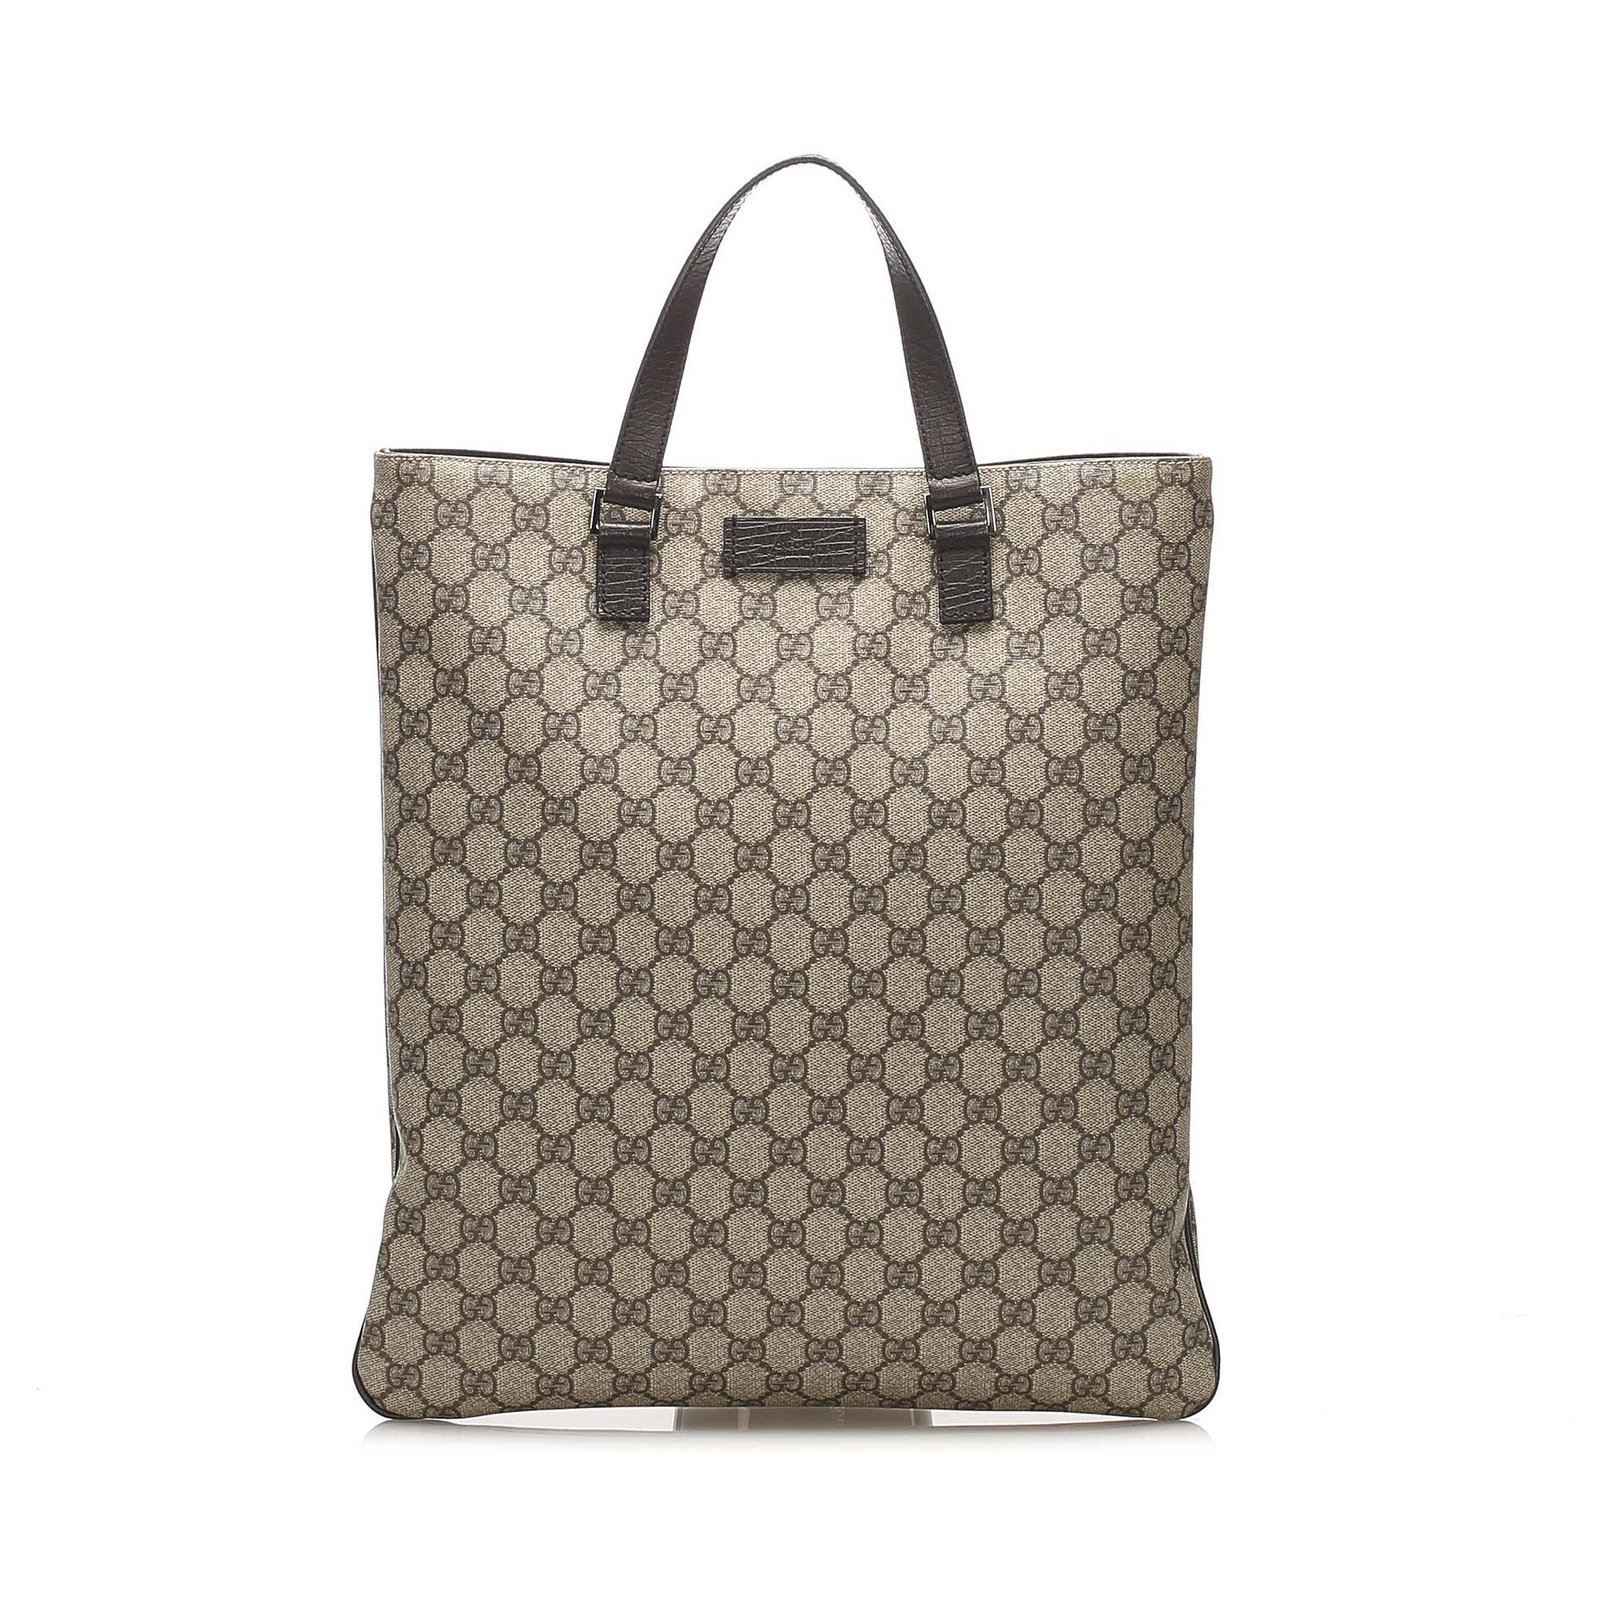 Gucci GG Supreme Tote Bag